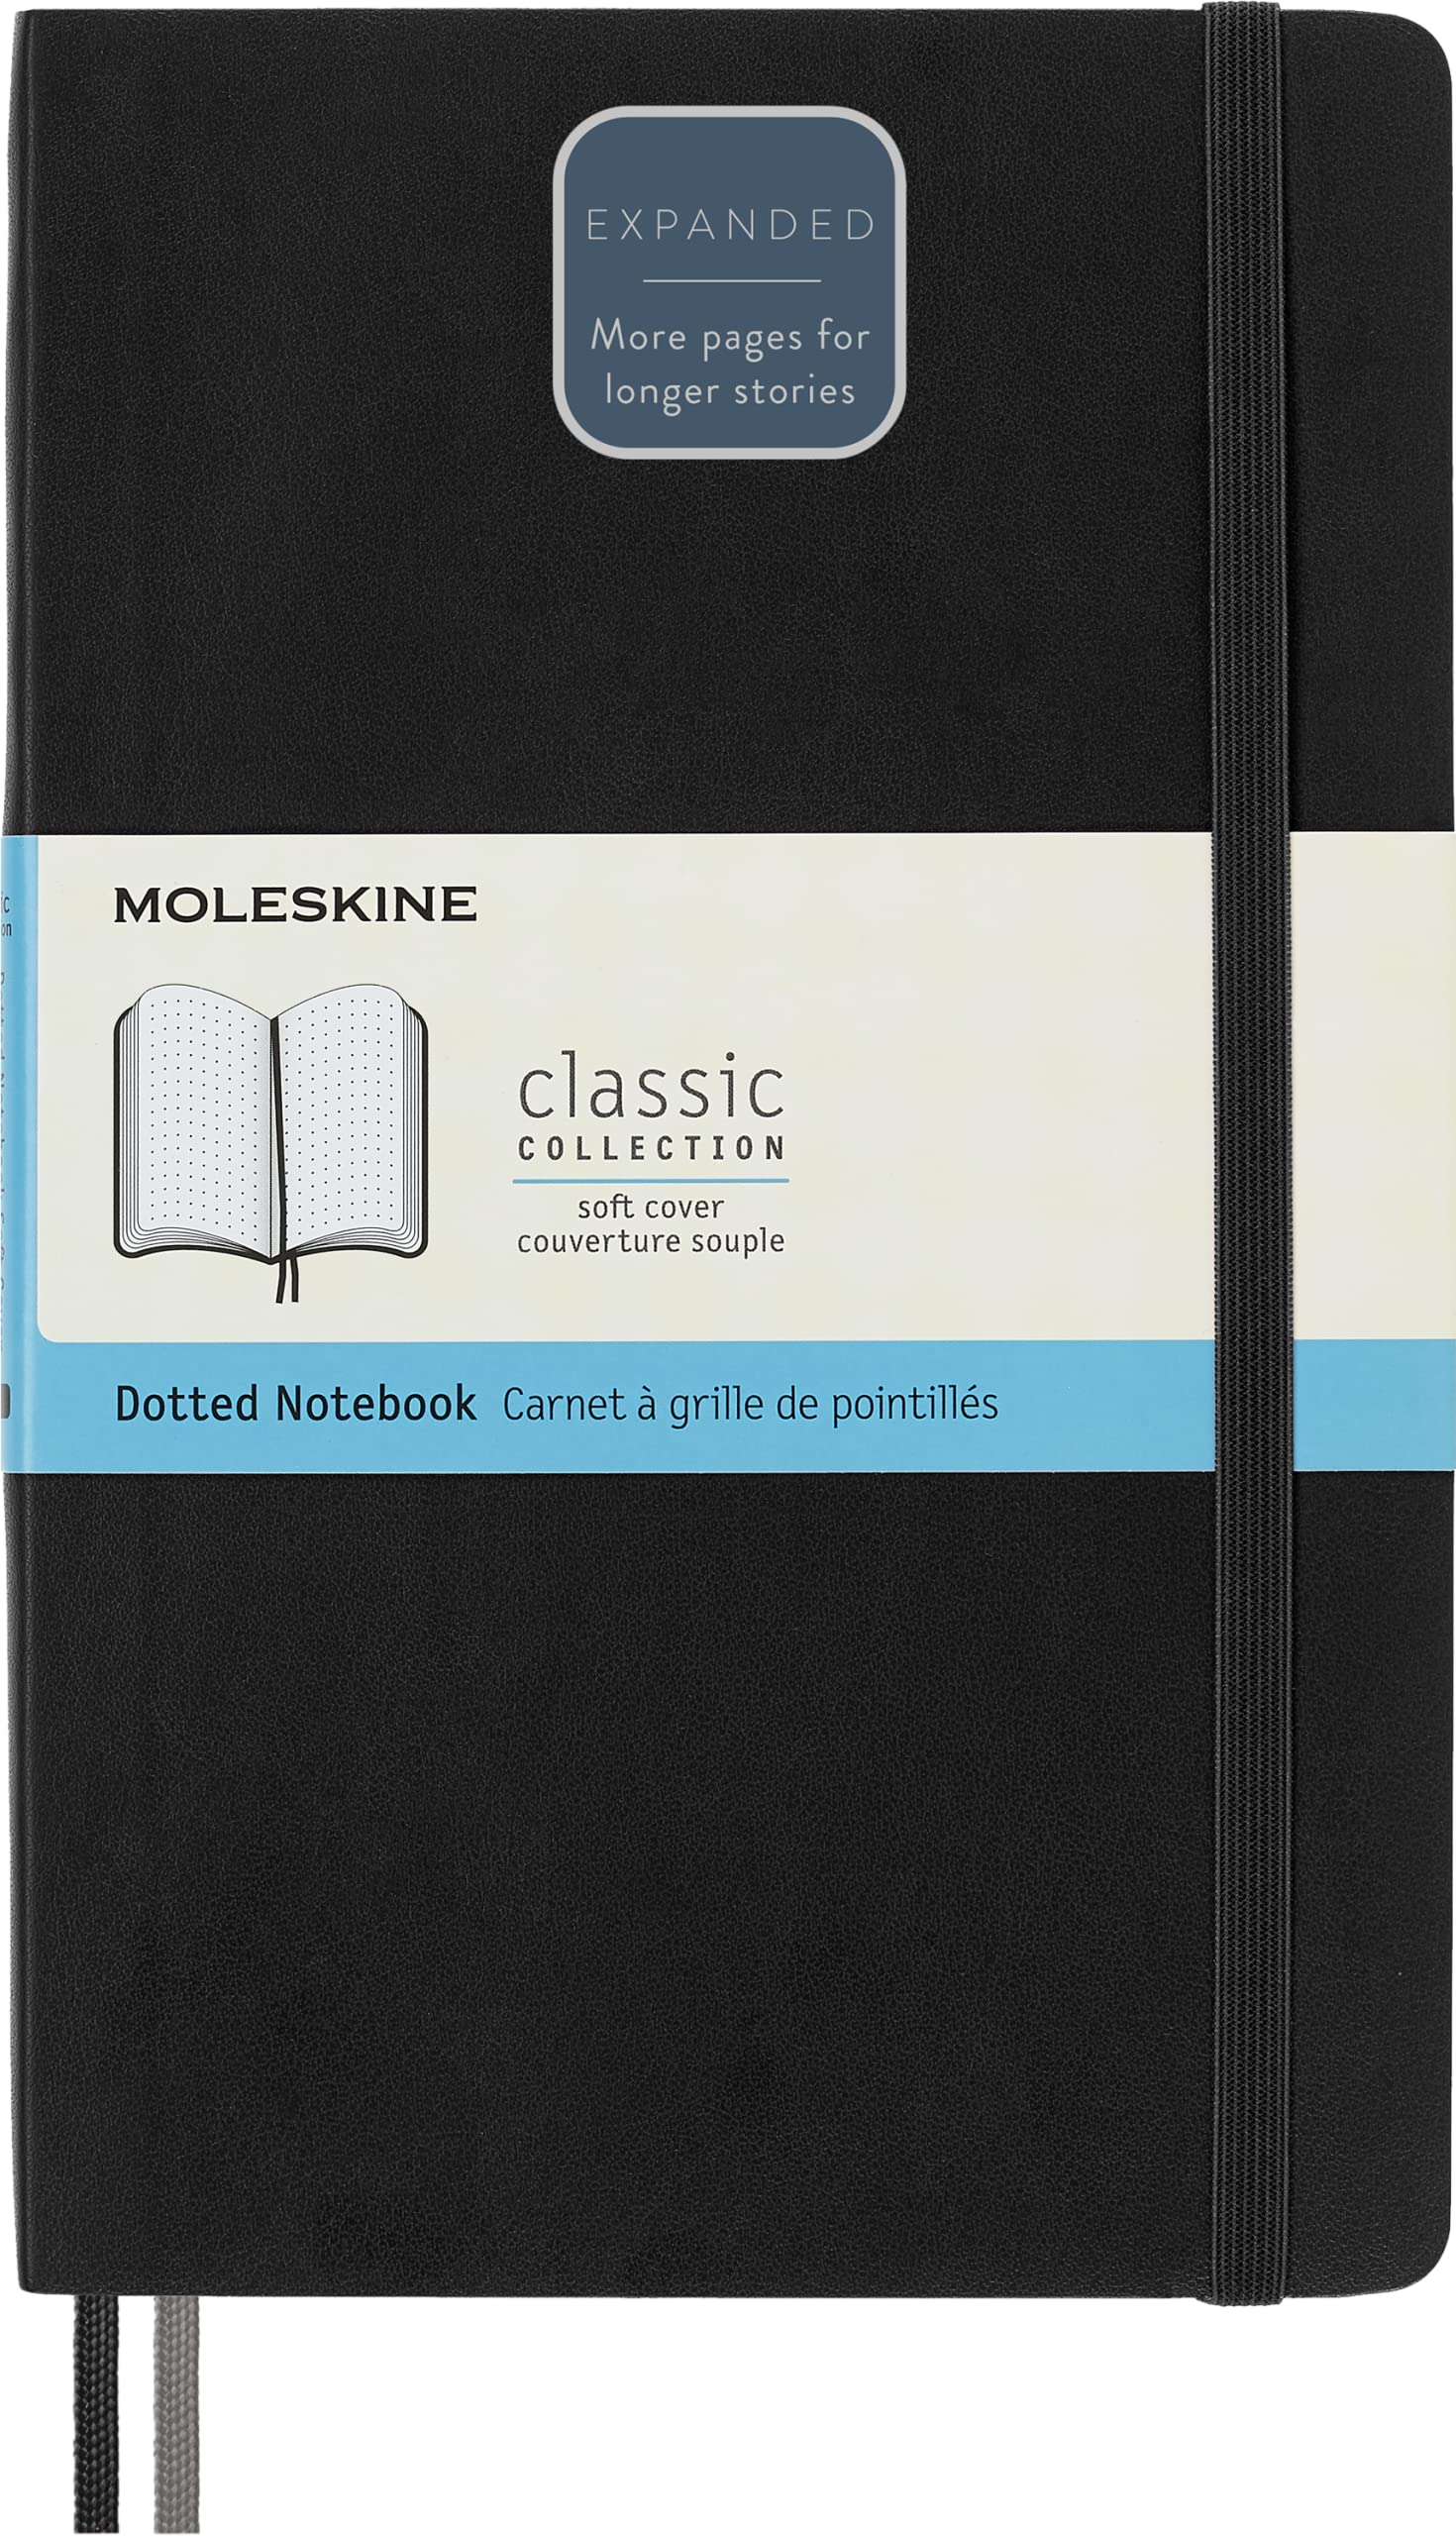 Moleskine - Klassisches erweitertes Notizbuch mit gepunktetem Papier - Weicher Umschlag und elastischer Verschluss - Farbe Schwarz - Größe Groß 13 x 21 A5 - 400 Seiten